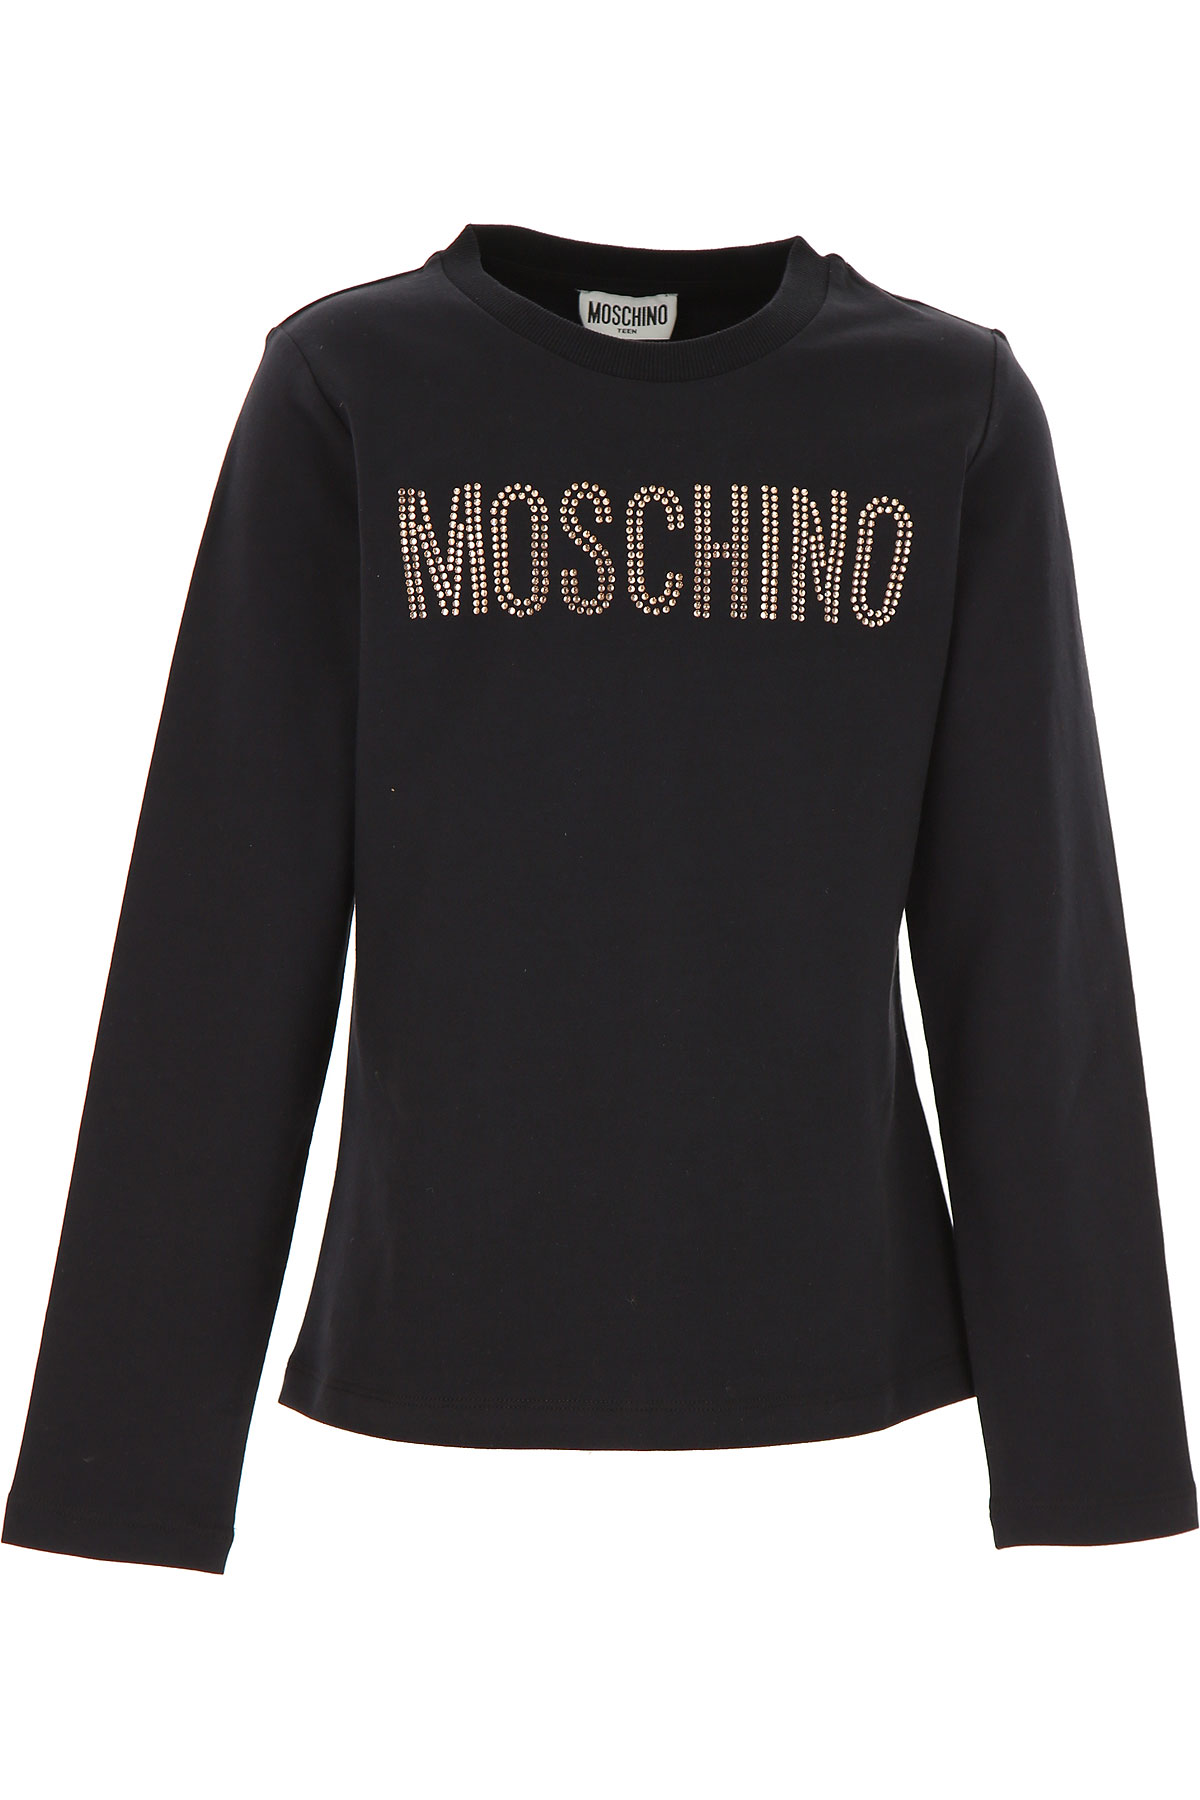 Moschino Kinder T-Shirt für Mädchen Günstig im Sale, Schwarz, Baumwolle, 2017, 10Y 12Y 14Y 8Y